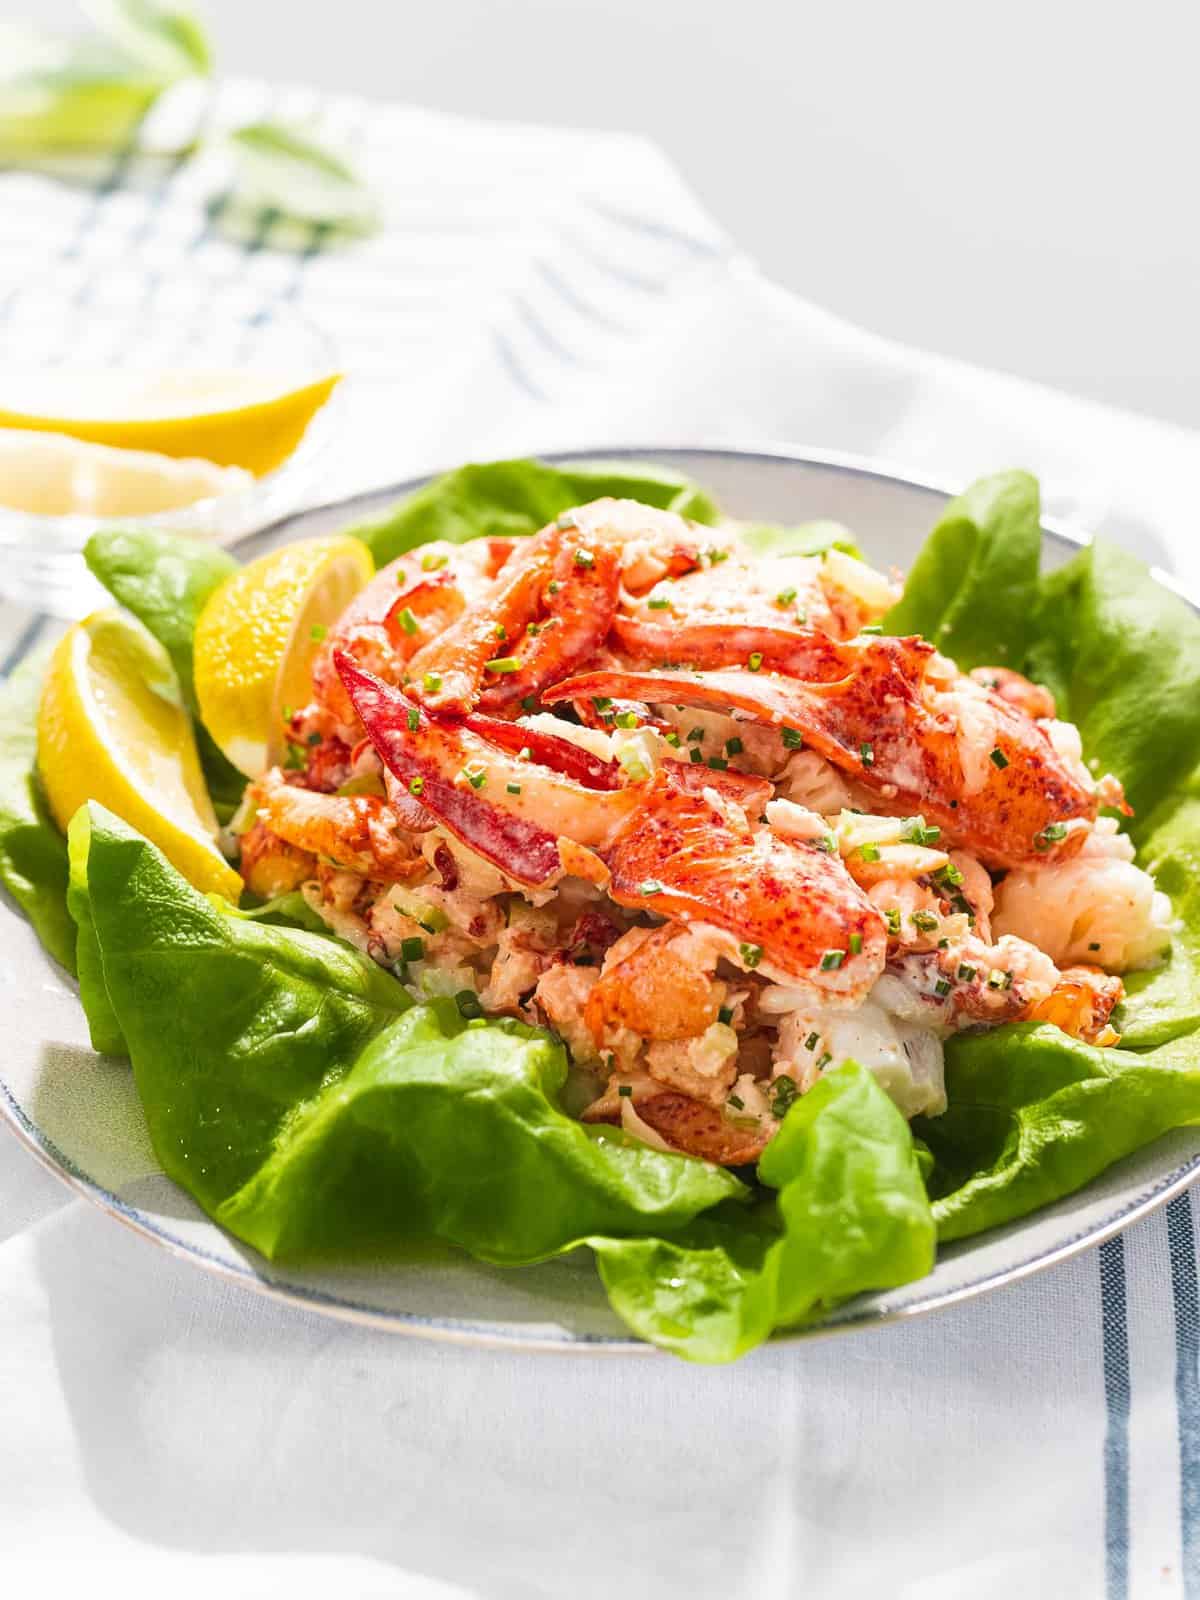 Lobster salad on top of lettuce next to lemons.